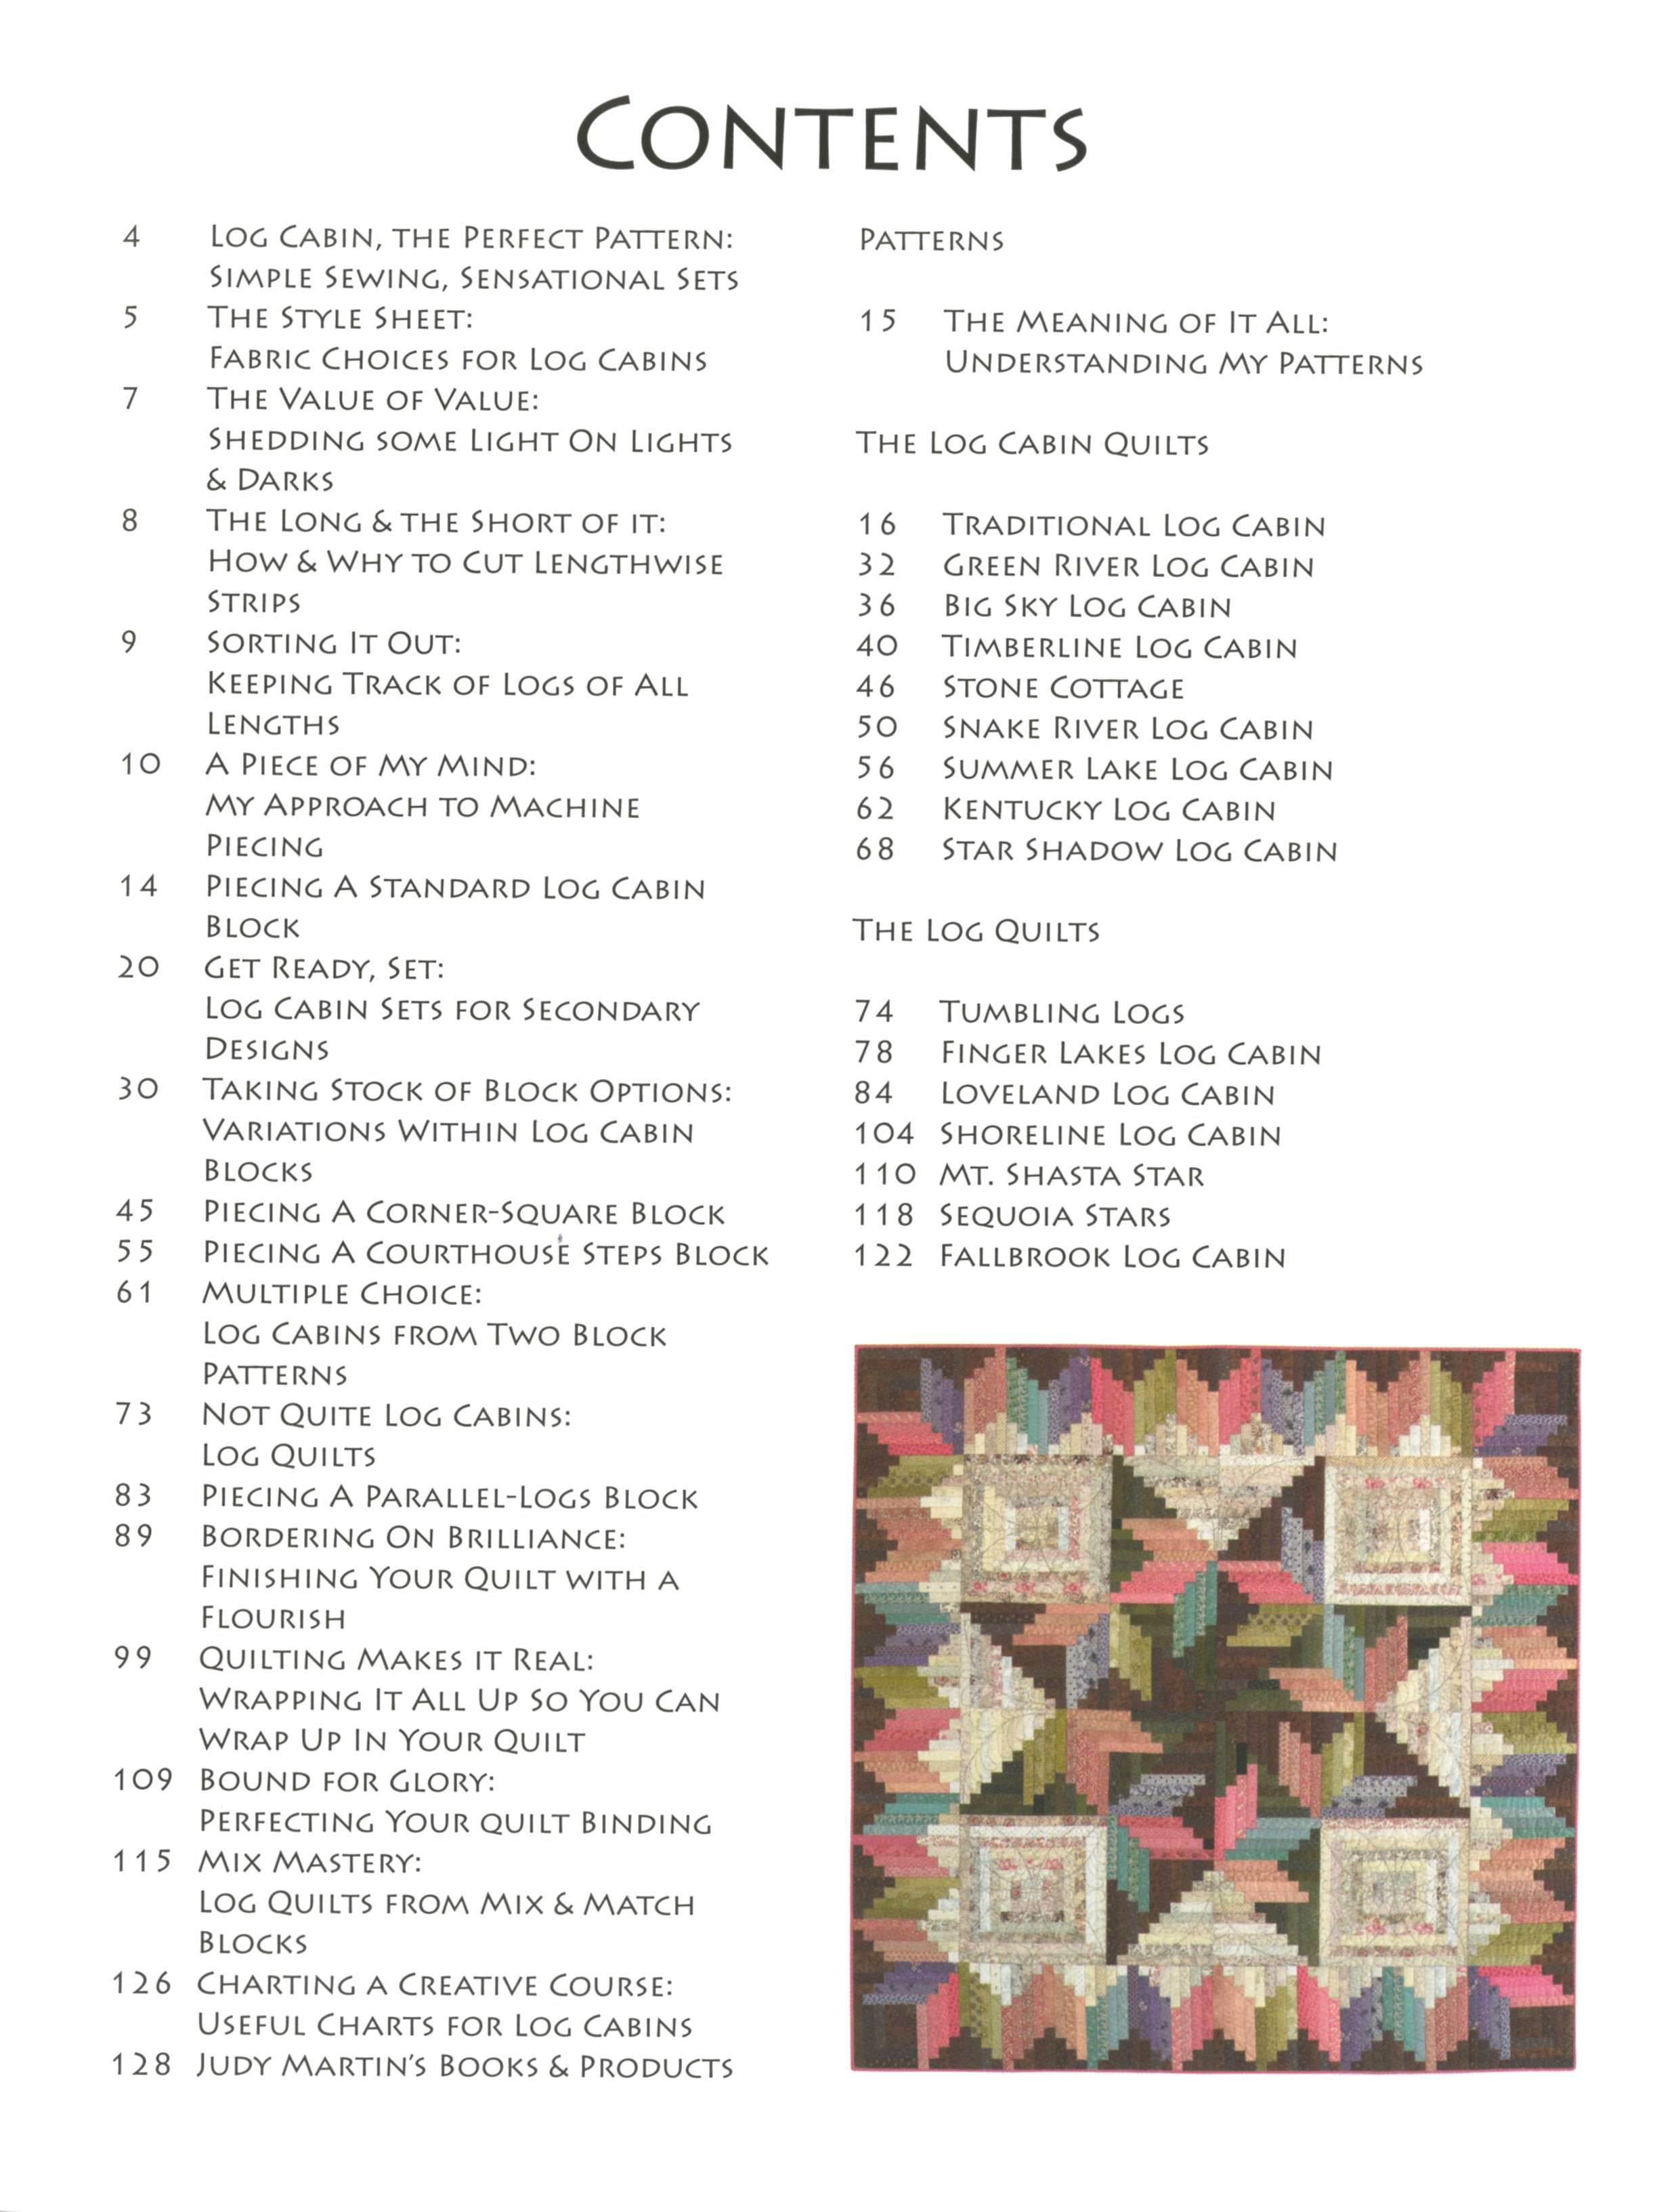 Judy Martin's Log Cabin Quilt Book – Judy Martin Quilts & Books